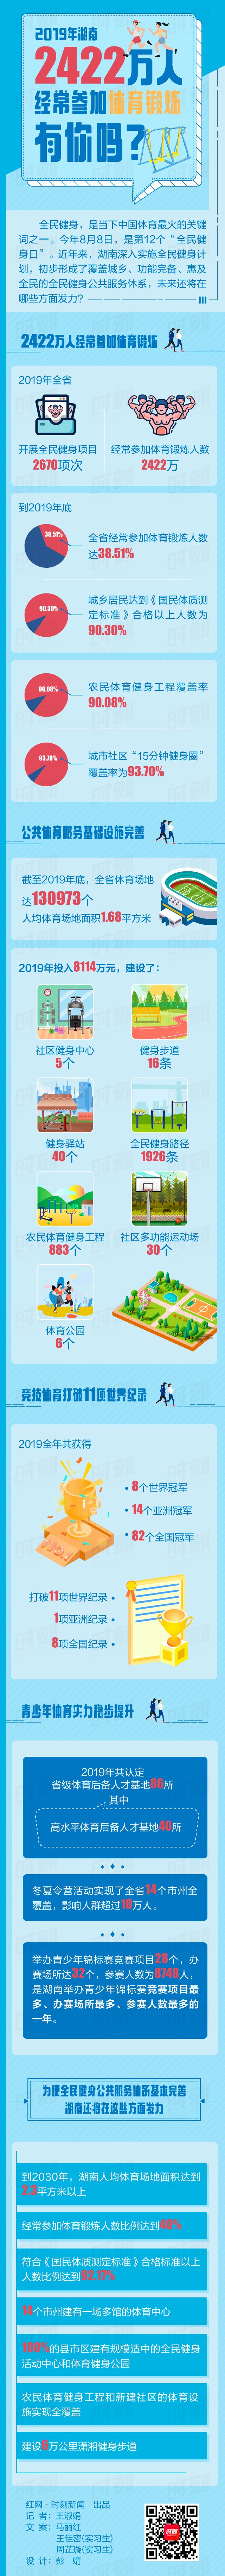 图解丨2019年湖南2422万人经常参加体育锻炼，有你吗？